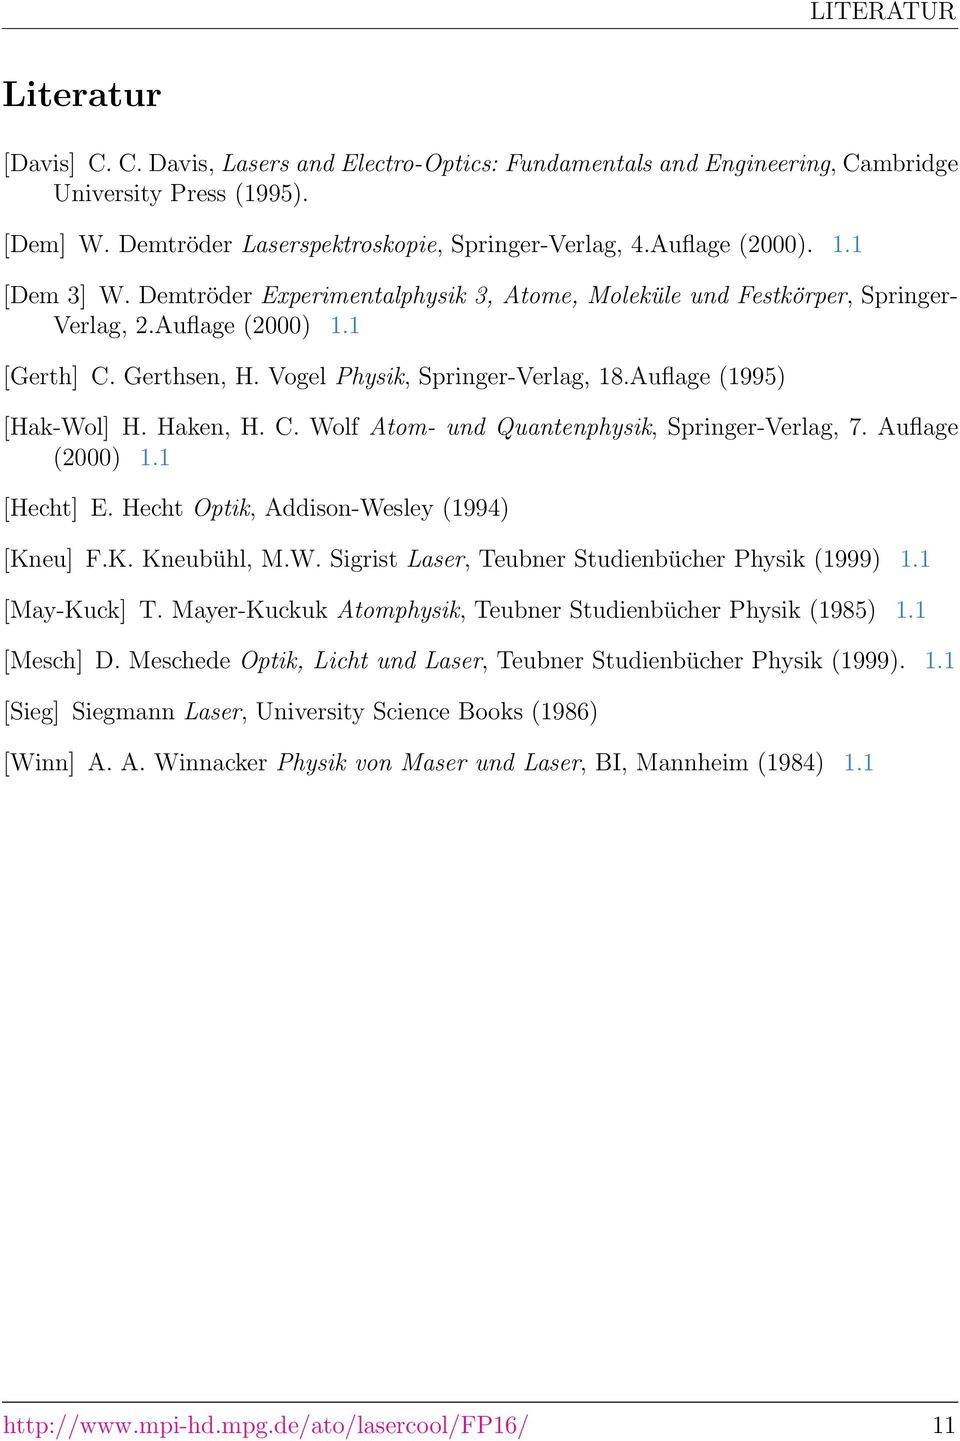 Auflage (1995) [Hak-Wol] H. Haken, H. C. Wolf Atom- und Quantenphysik, Springer-Verlag, 7. Auflage (2000) 1.1 [Hecht] E. Hecht Optik, Addison-Wesley (1994) [Kneu] F.K. Kneubühl, M.W. Sigrist Laser, Teubner Studienbücher Physik (1999) 1.